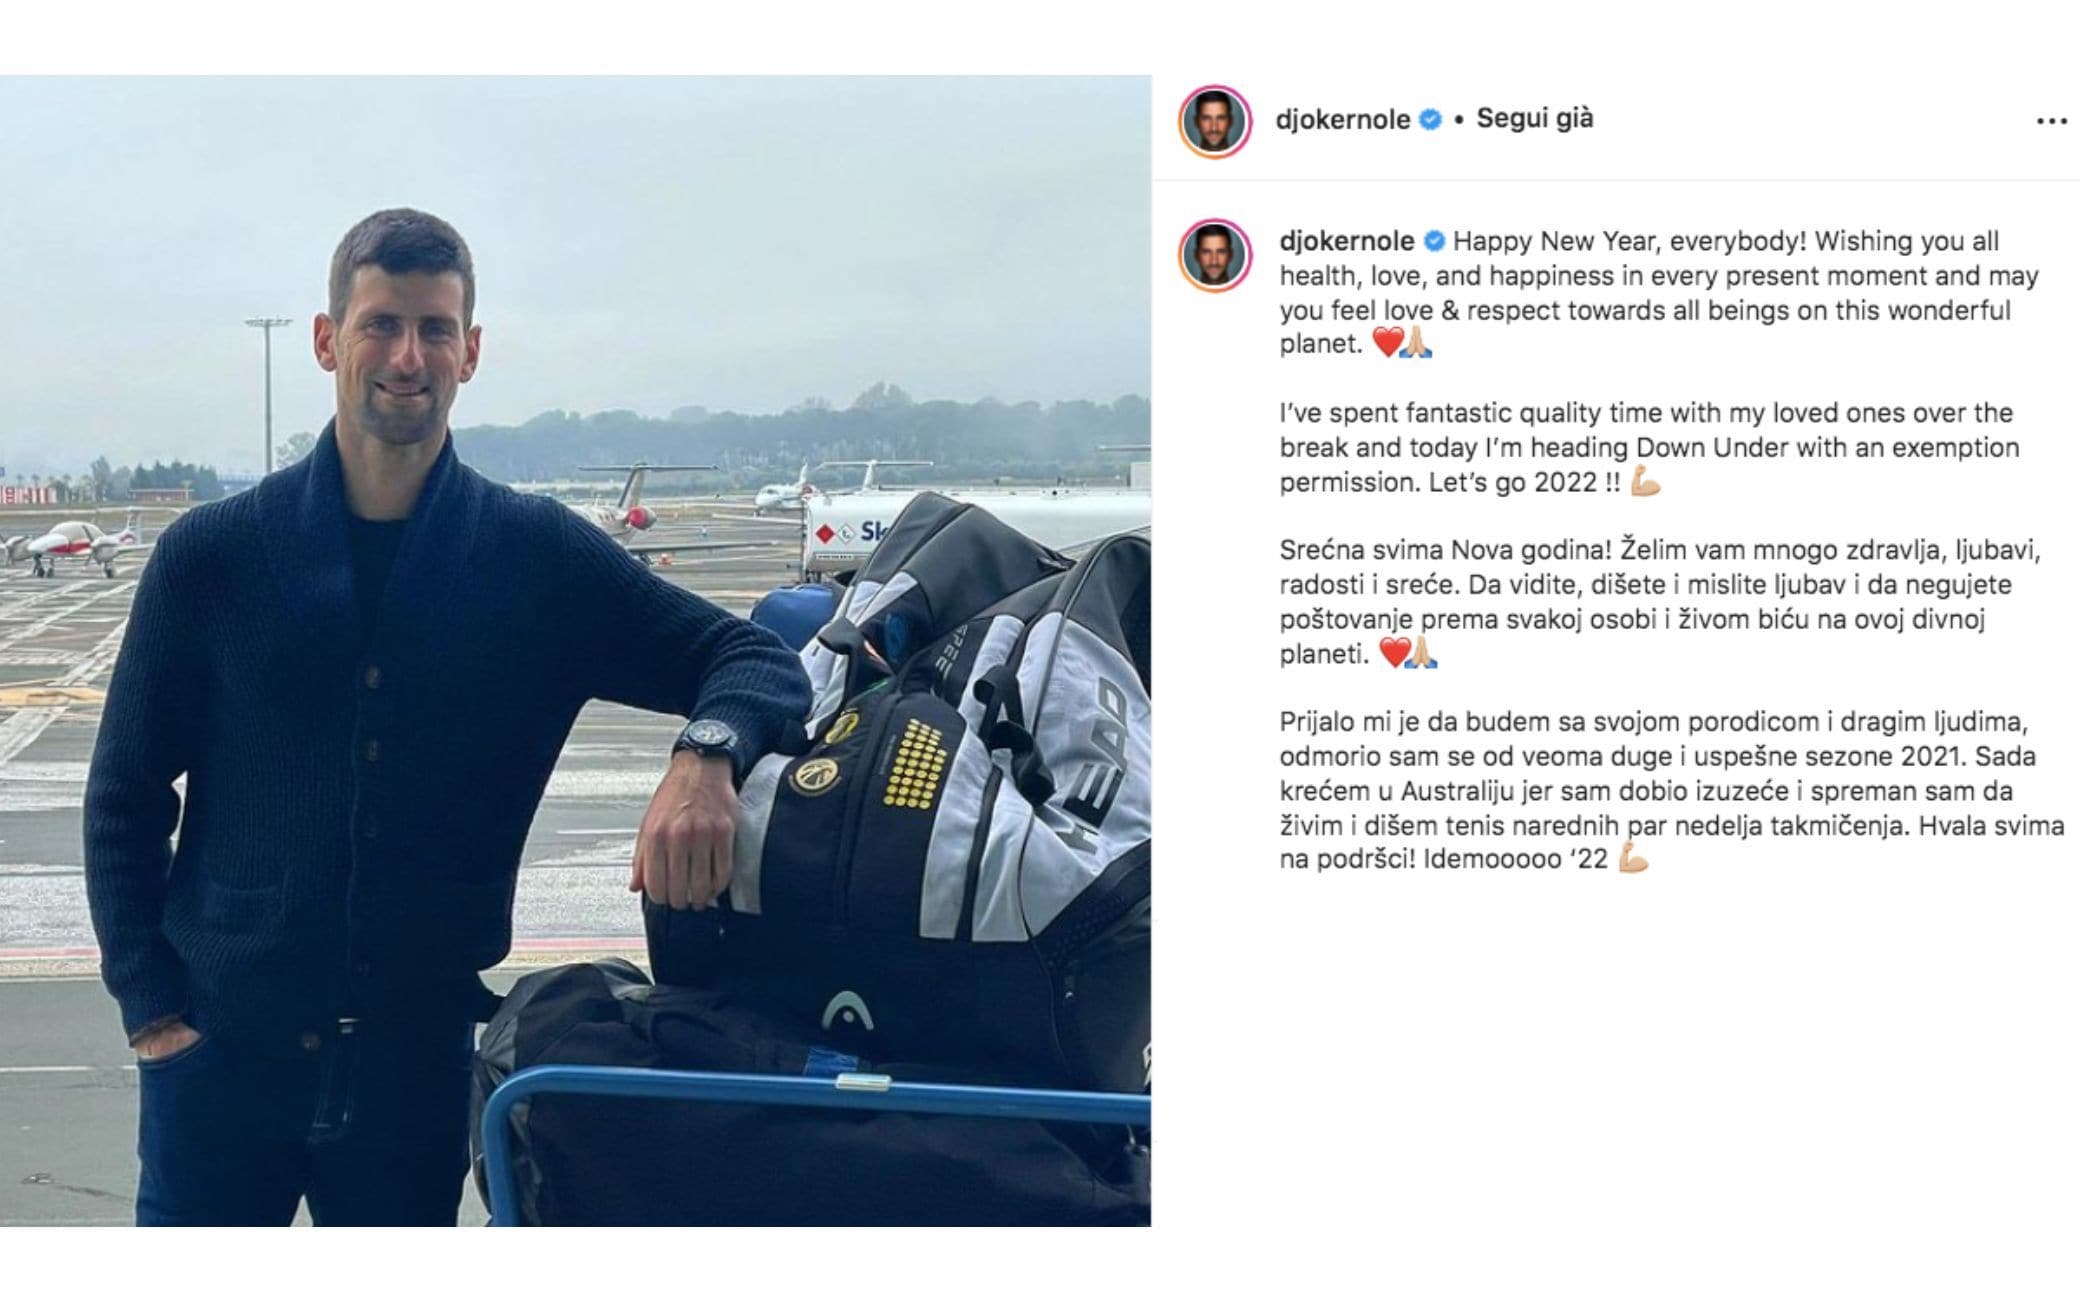 Djokovic à l’Open d’Australie : « Je vais en Australie avec permission »